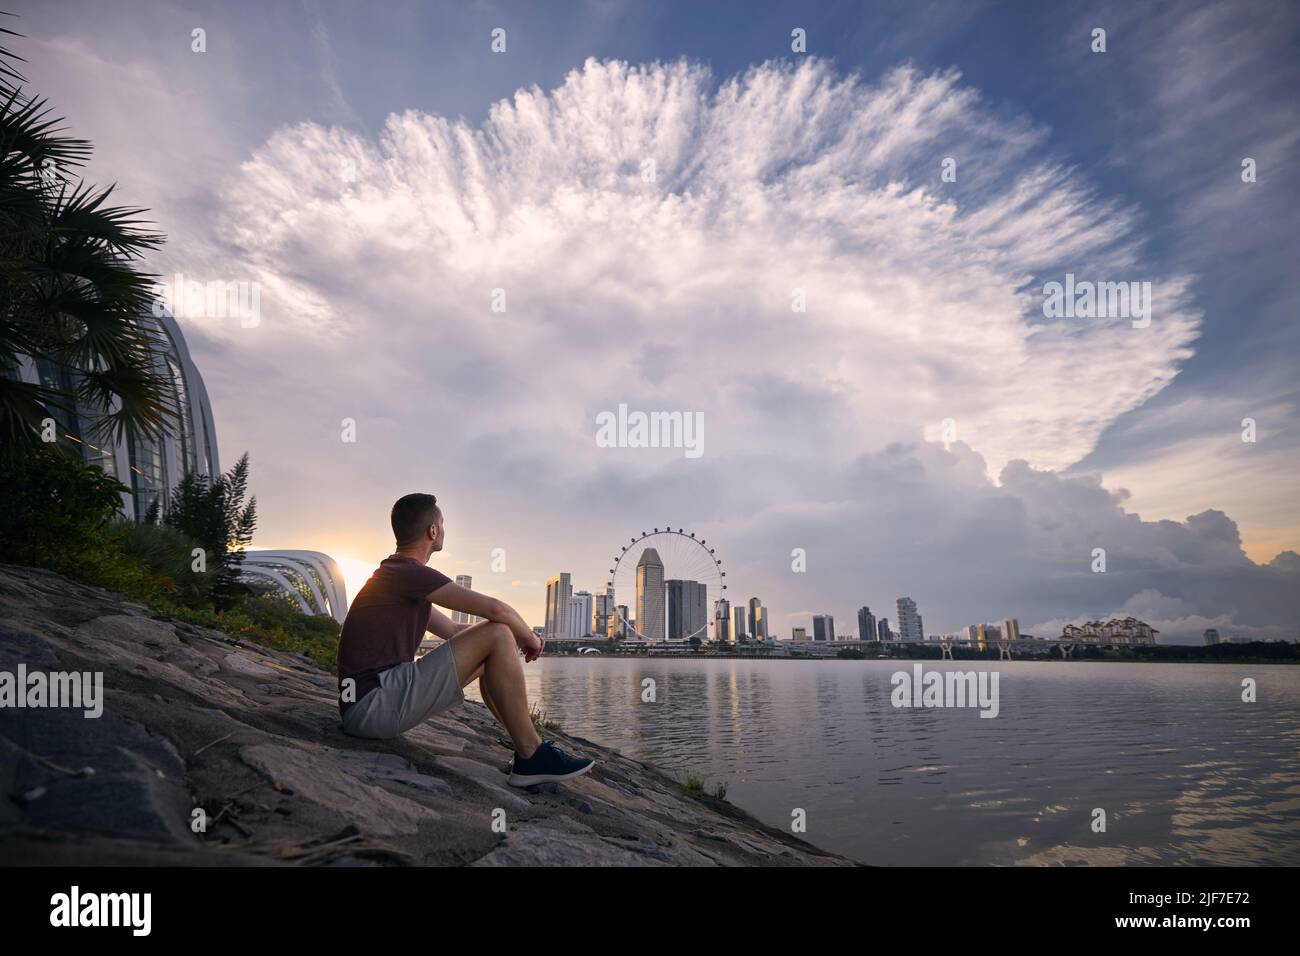 Giovane uomo seduto sul lungomare e guardando le spettacolari nuvole di tempesta sopra lo skyline urbano, Singapore. Foto Stock